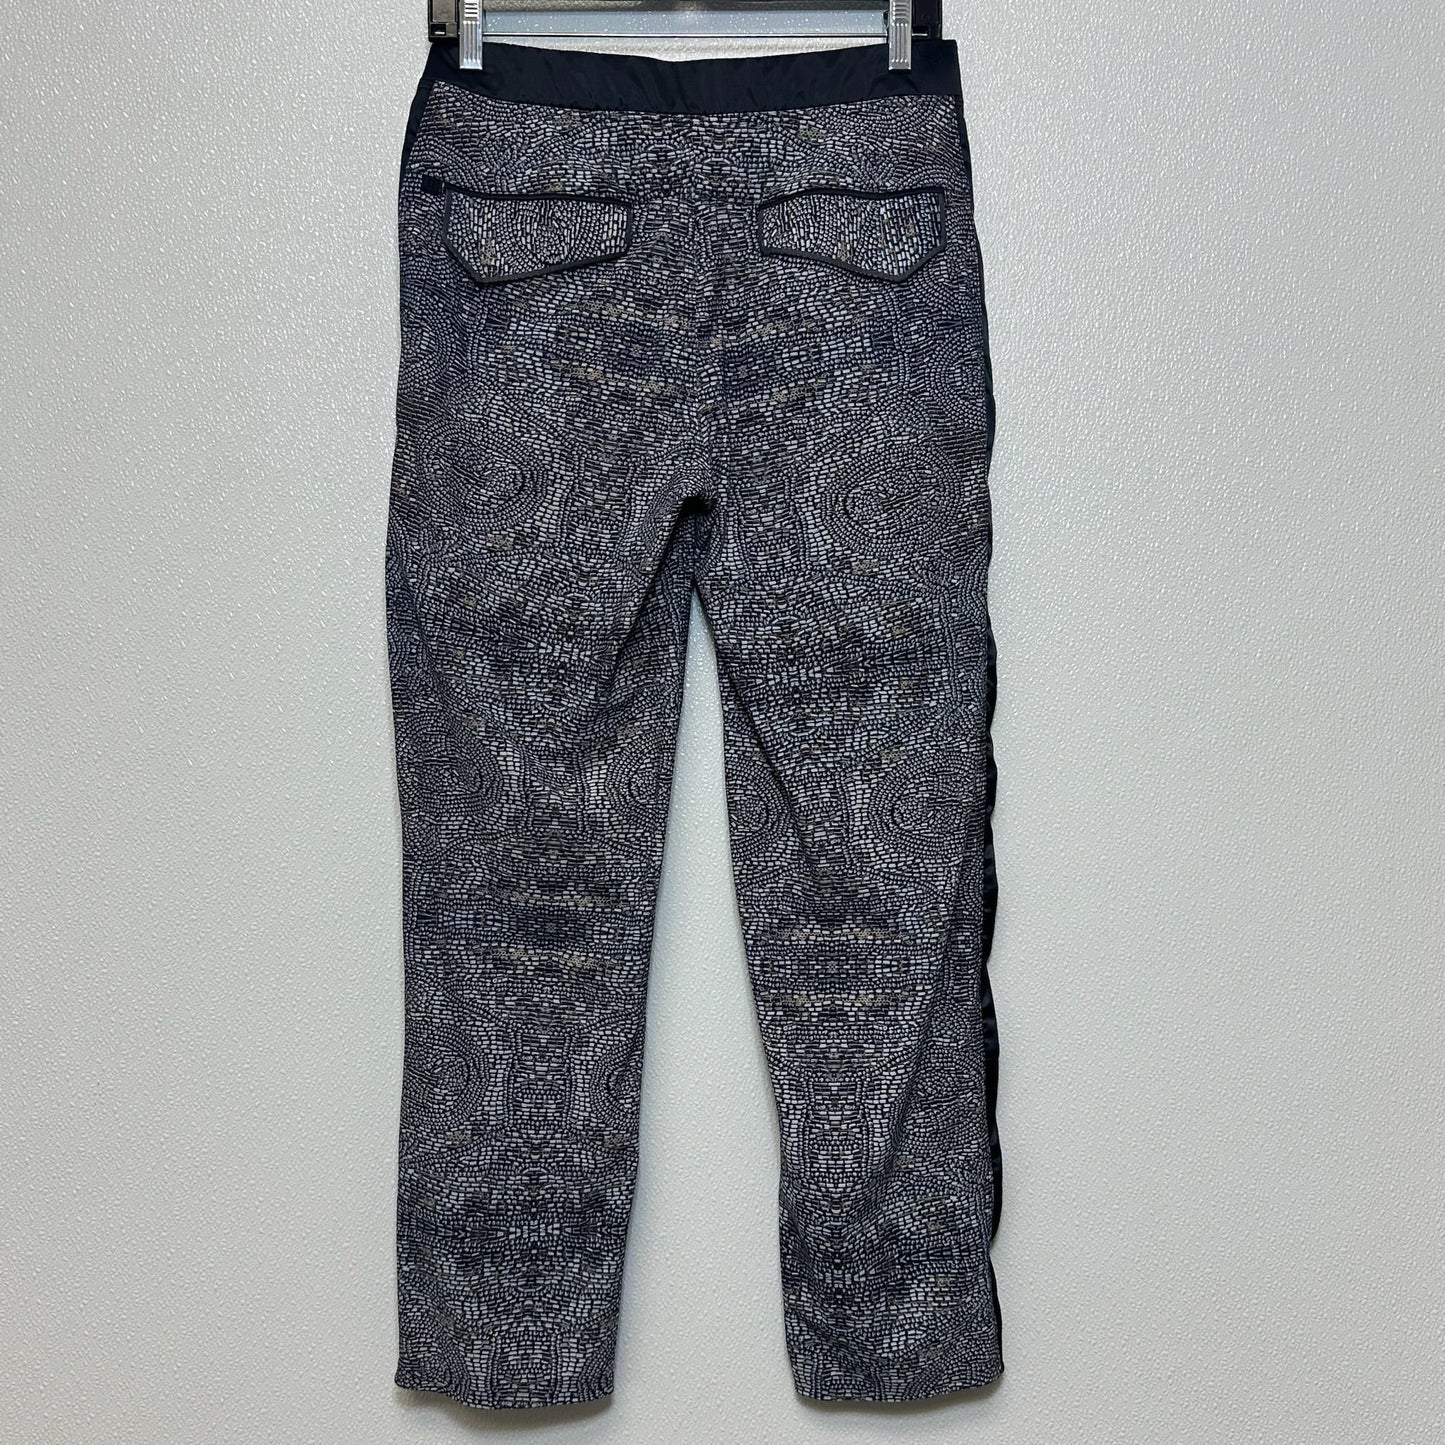 Grey Athletic Pants Lululemon, Size 10